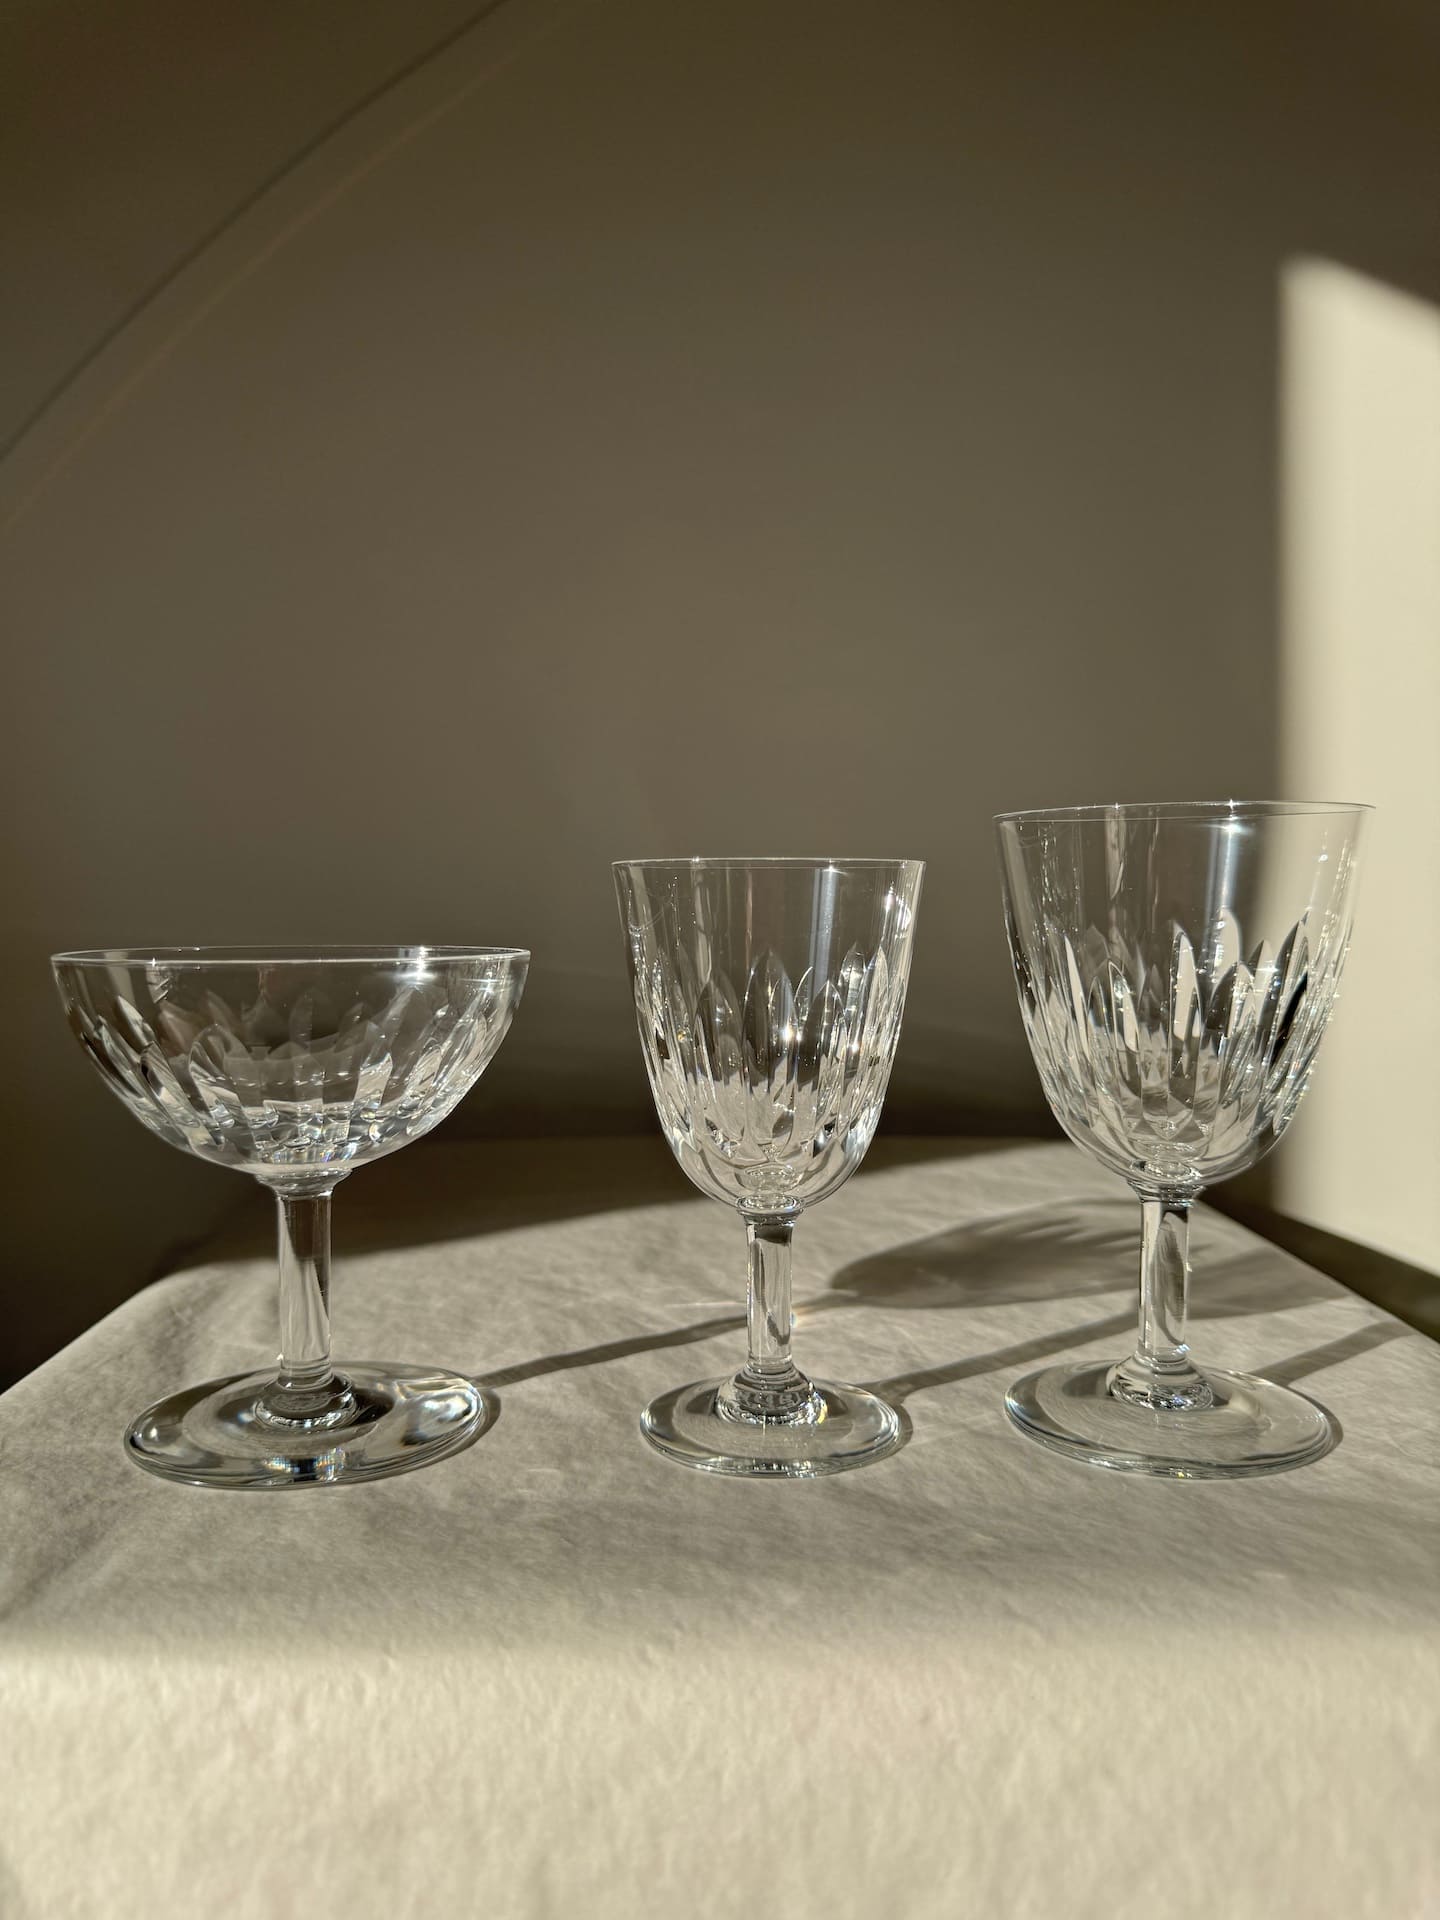 2 service verres baccarat anciens cristal cassinno 1953